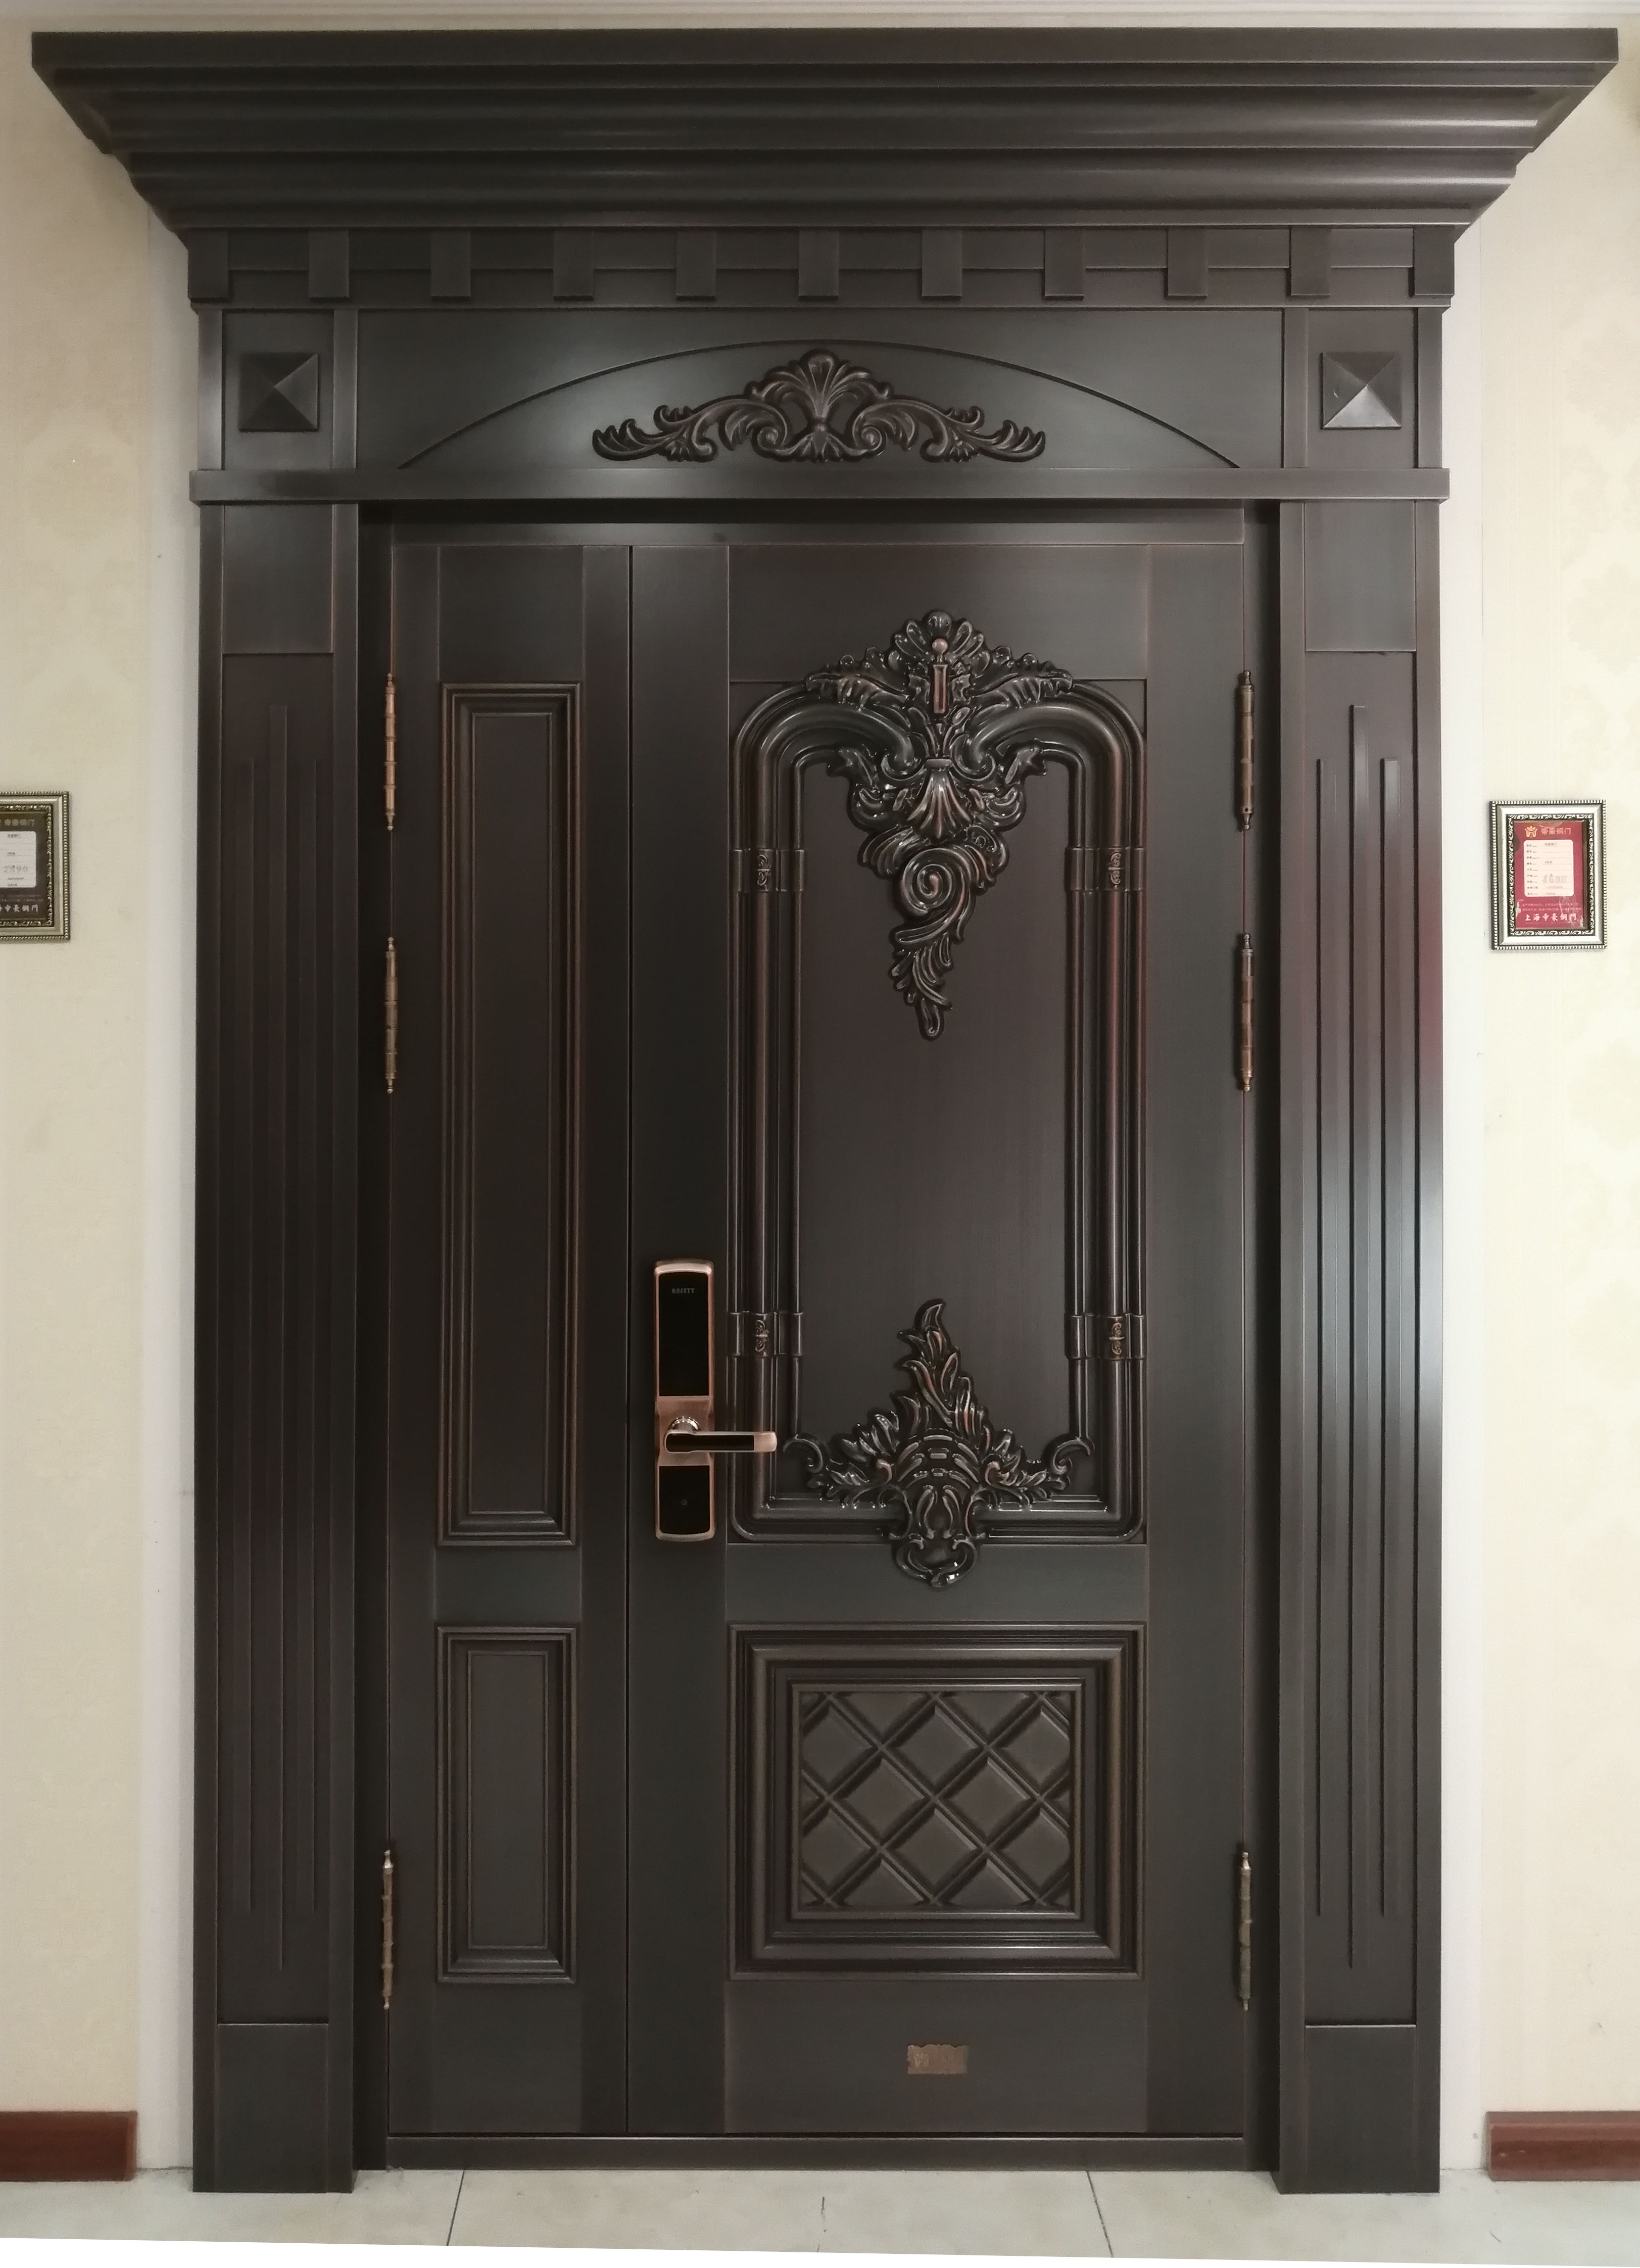 由于铜门的制作工艺复杂,蘸一点黑色哑光漆放在铜门上刷